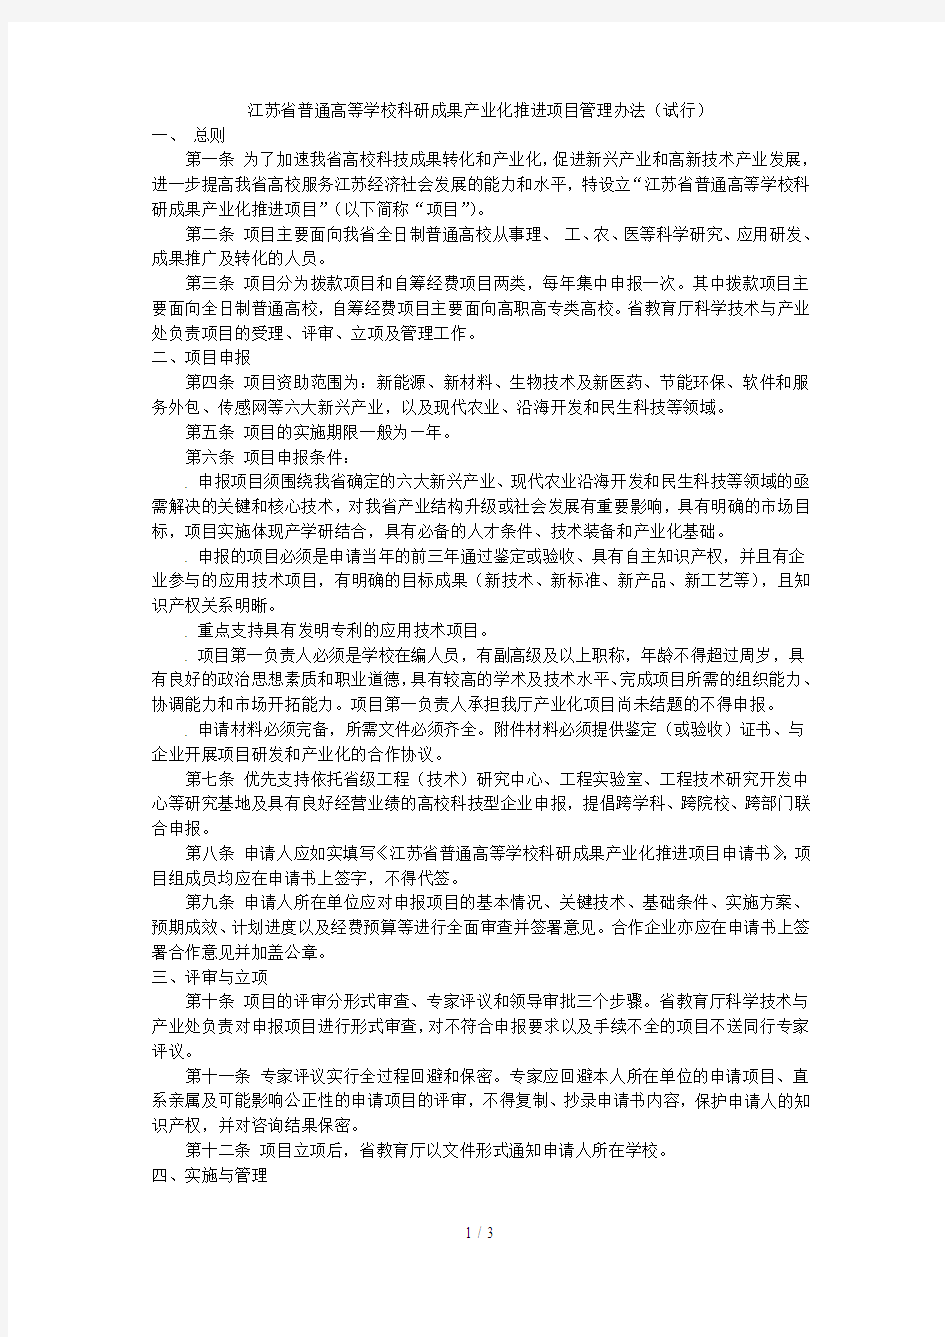 江苏省普通高等学校科研成果产业化推进项目管理办法(试行)